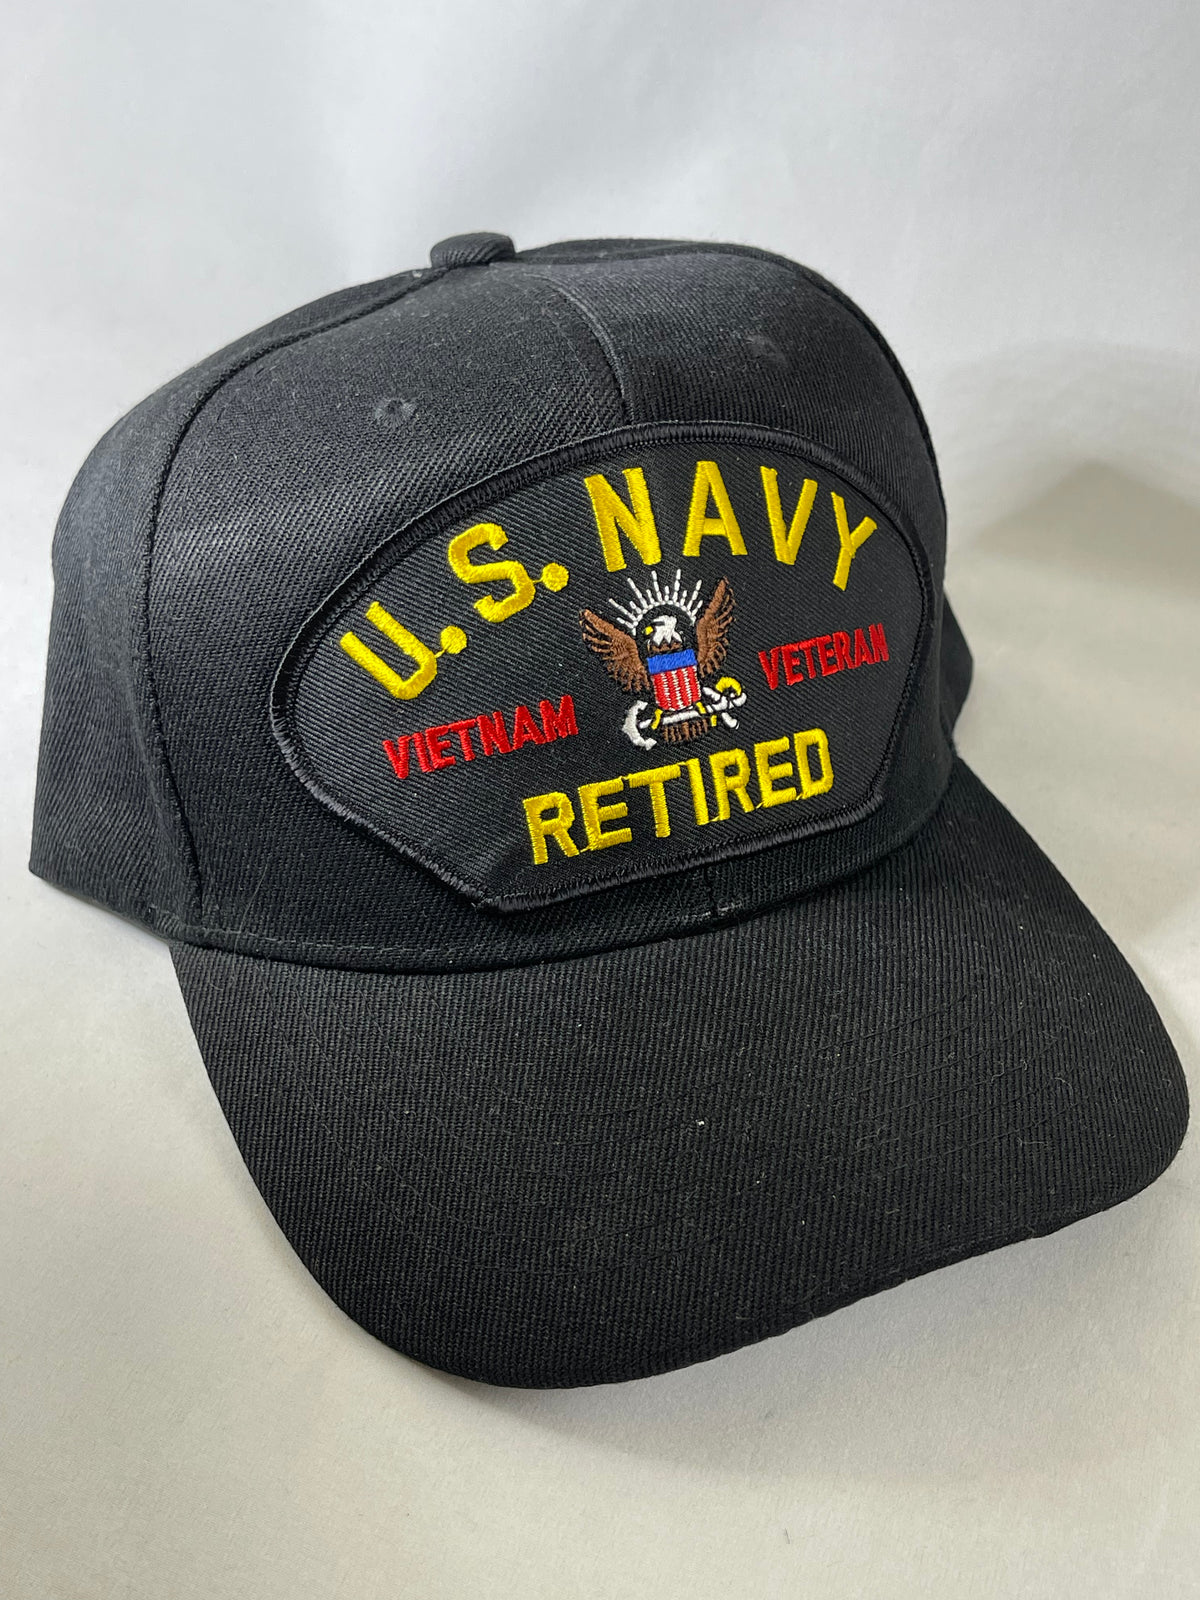 Cap US Navy Vietnam Veteran Retired